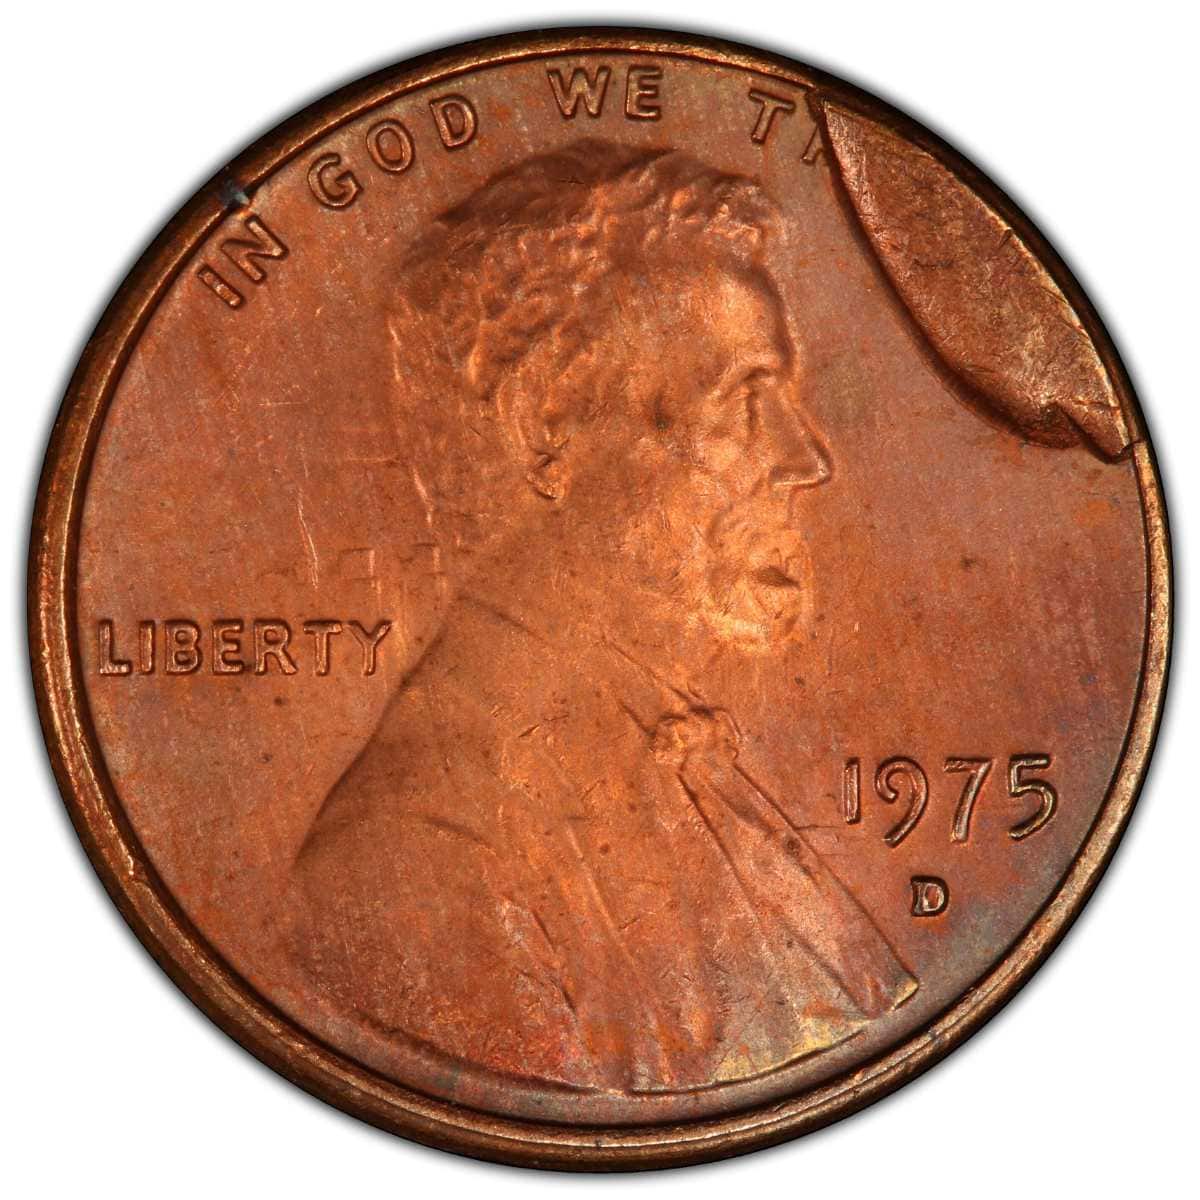 1975 penny Die Break Errors